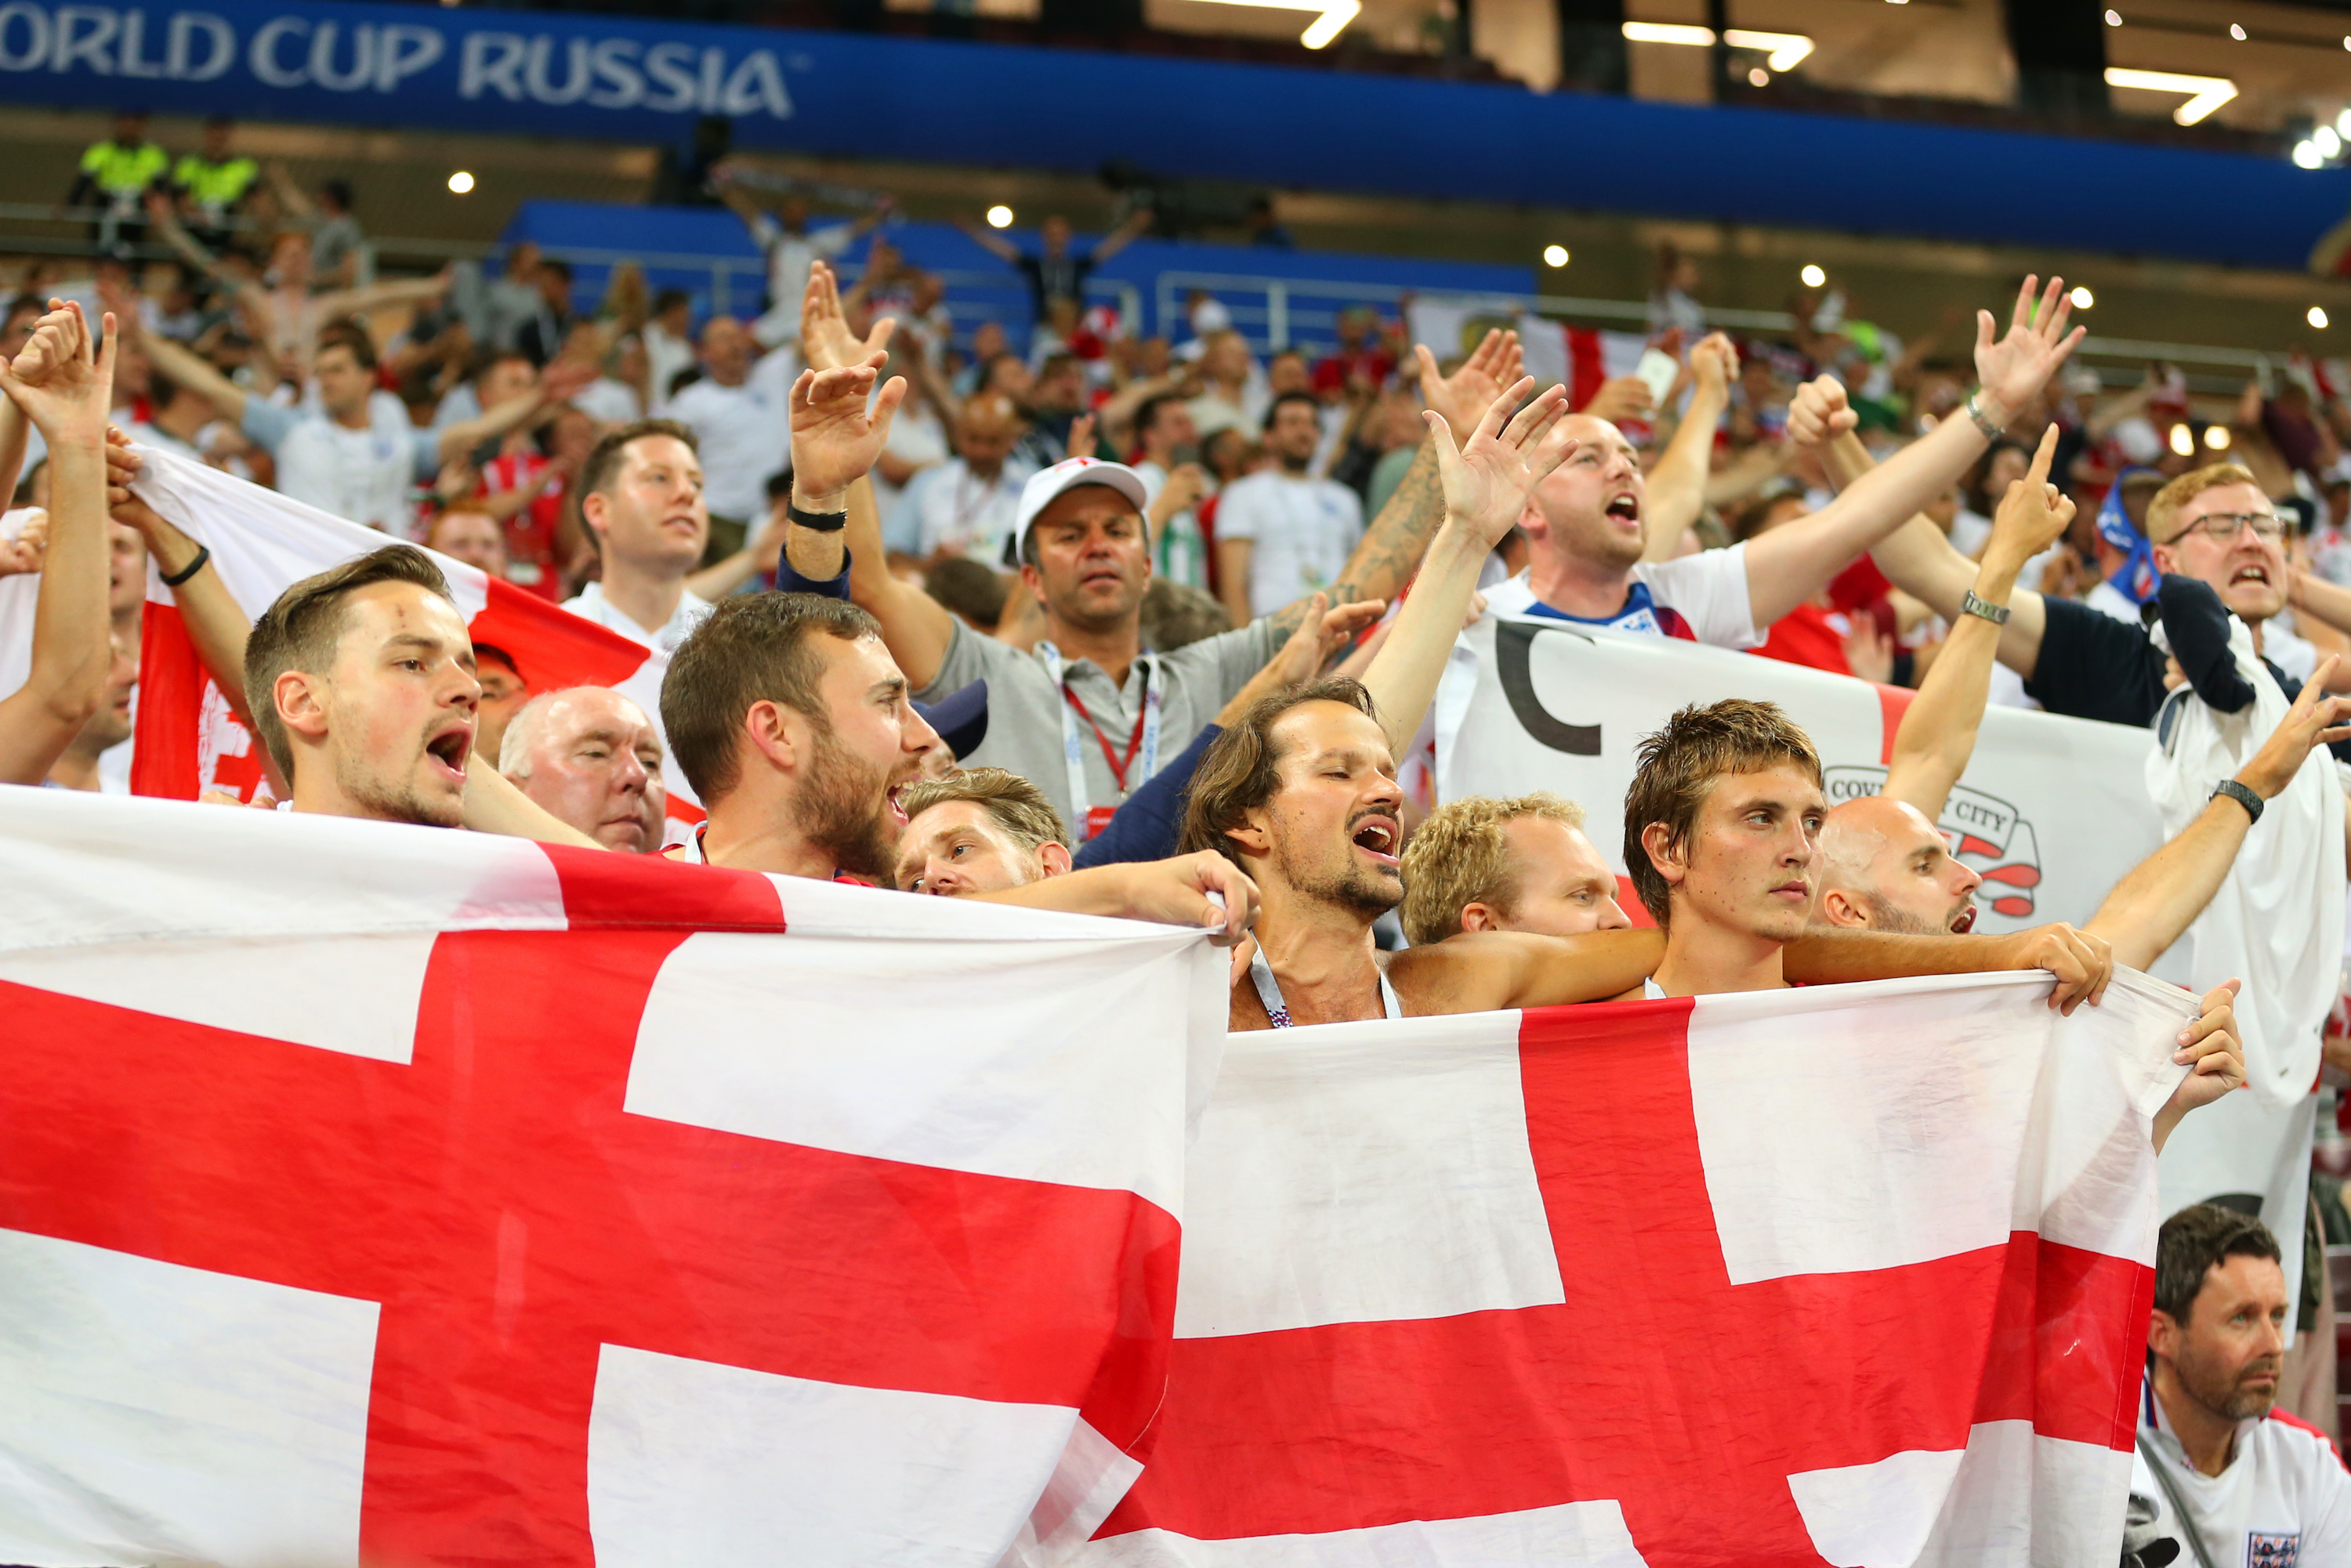 Singende England-Fans am Abend, als ihr Team im WM-Halbfinale 2018 gegen Kroatien verlor